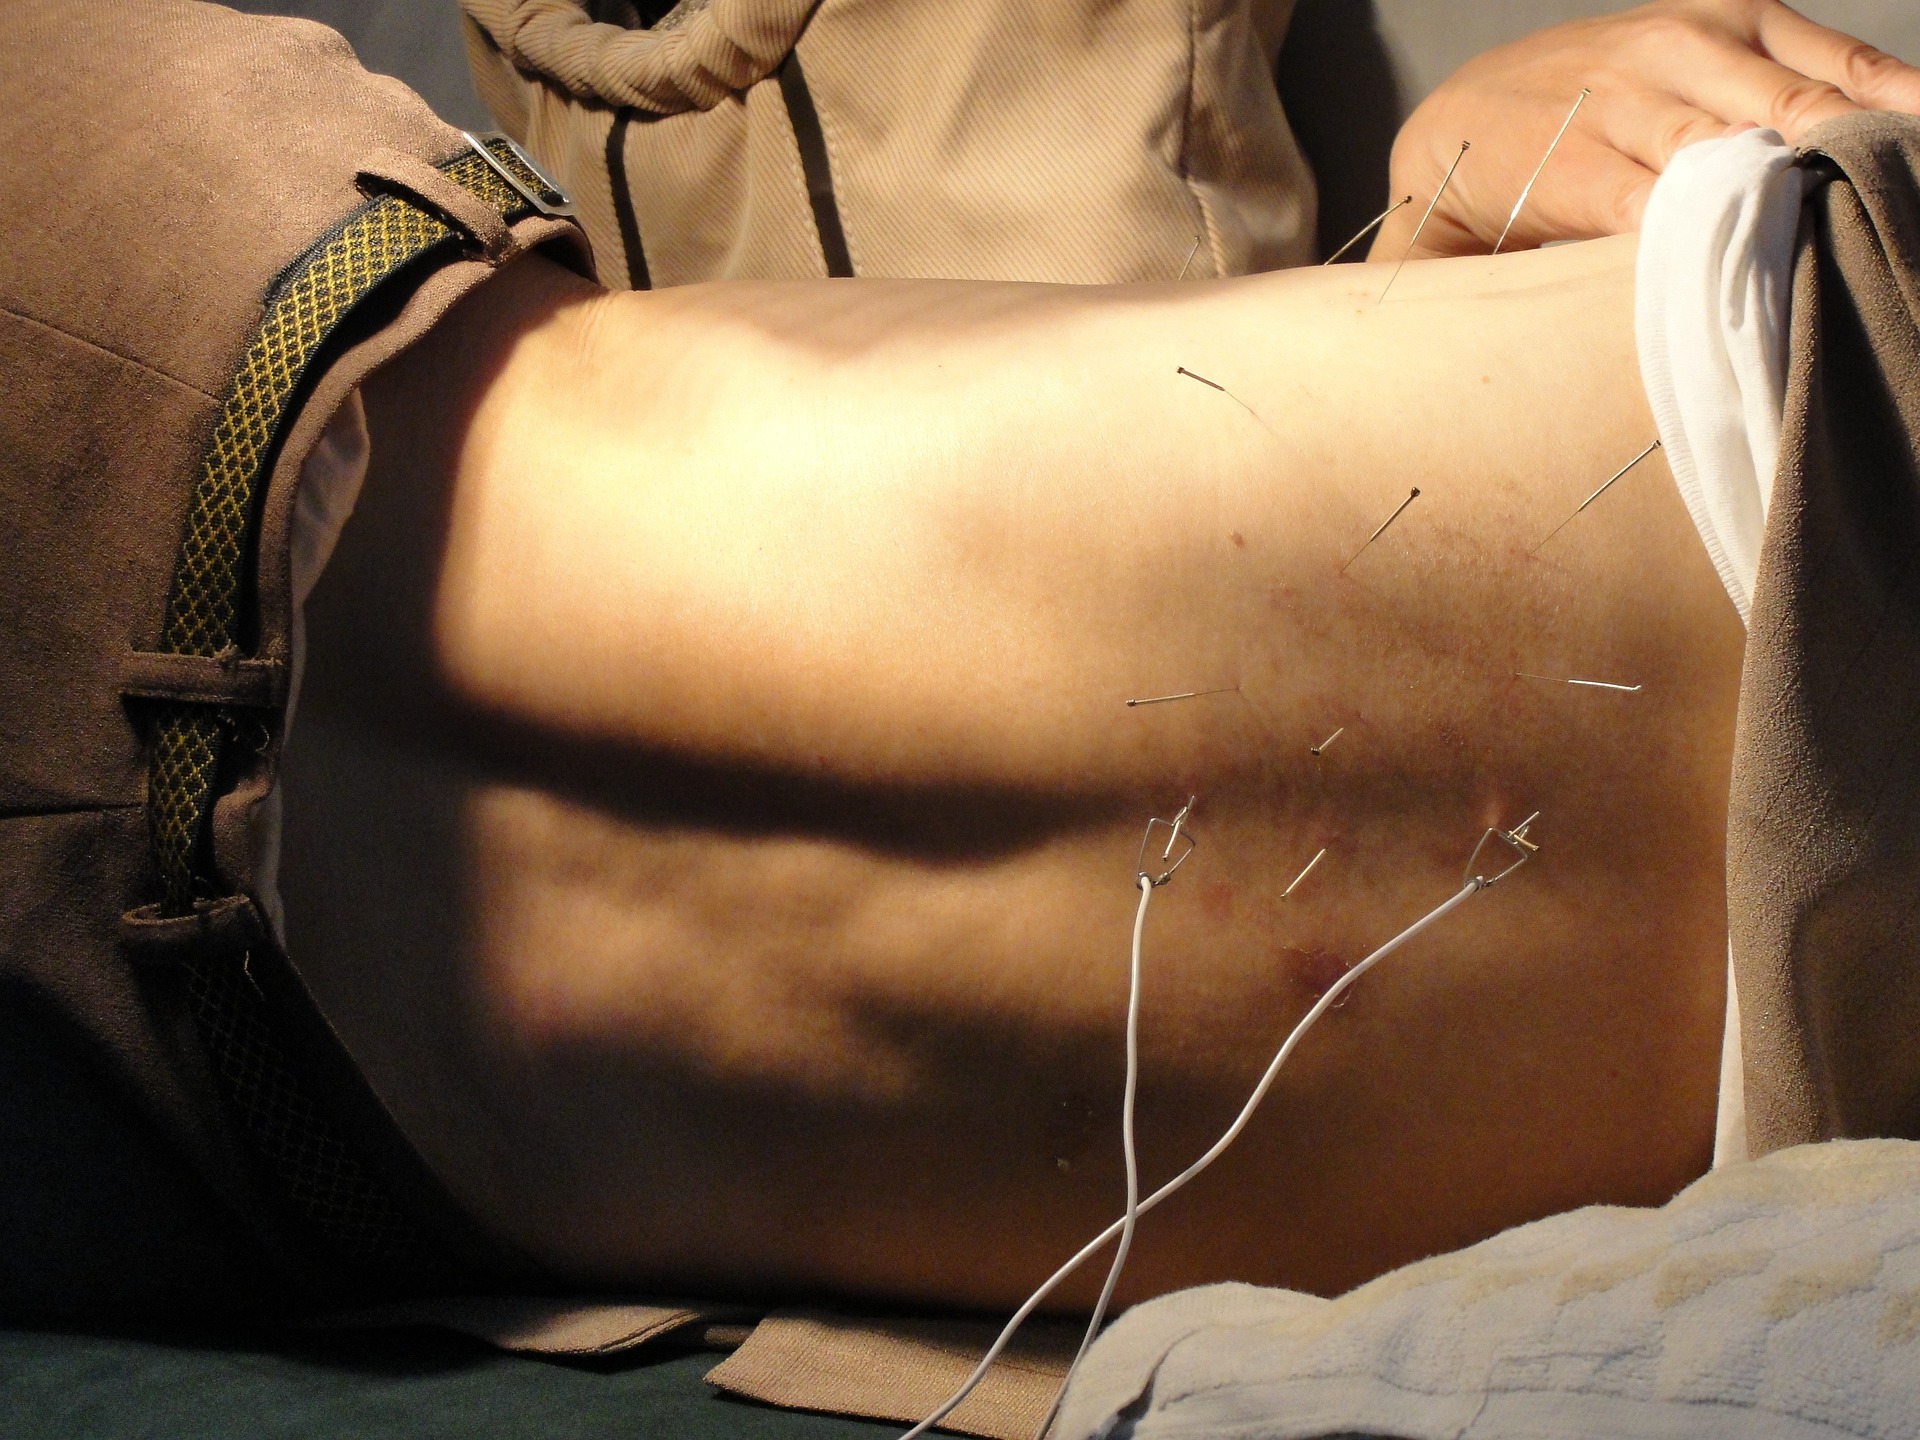 Akupunktur ist bei einigen Bedingungen wirksam, insbesondere bei verschiedenen Arten von Schmerzen